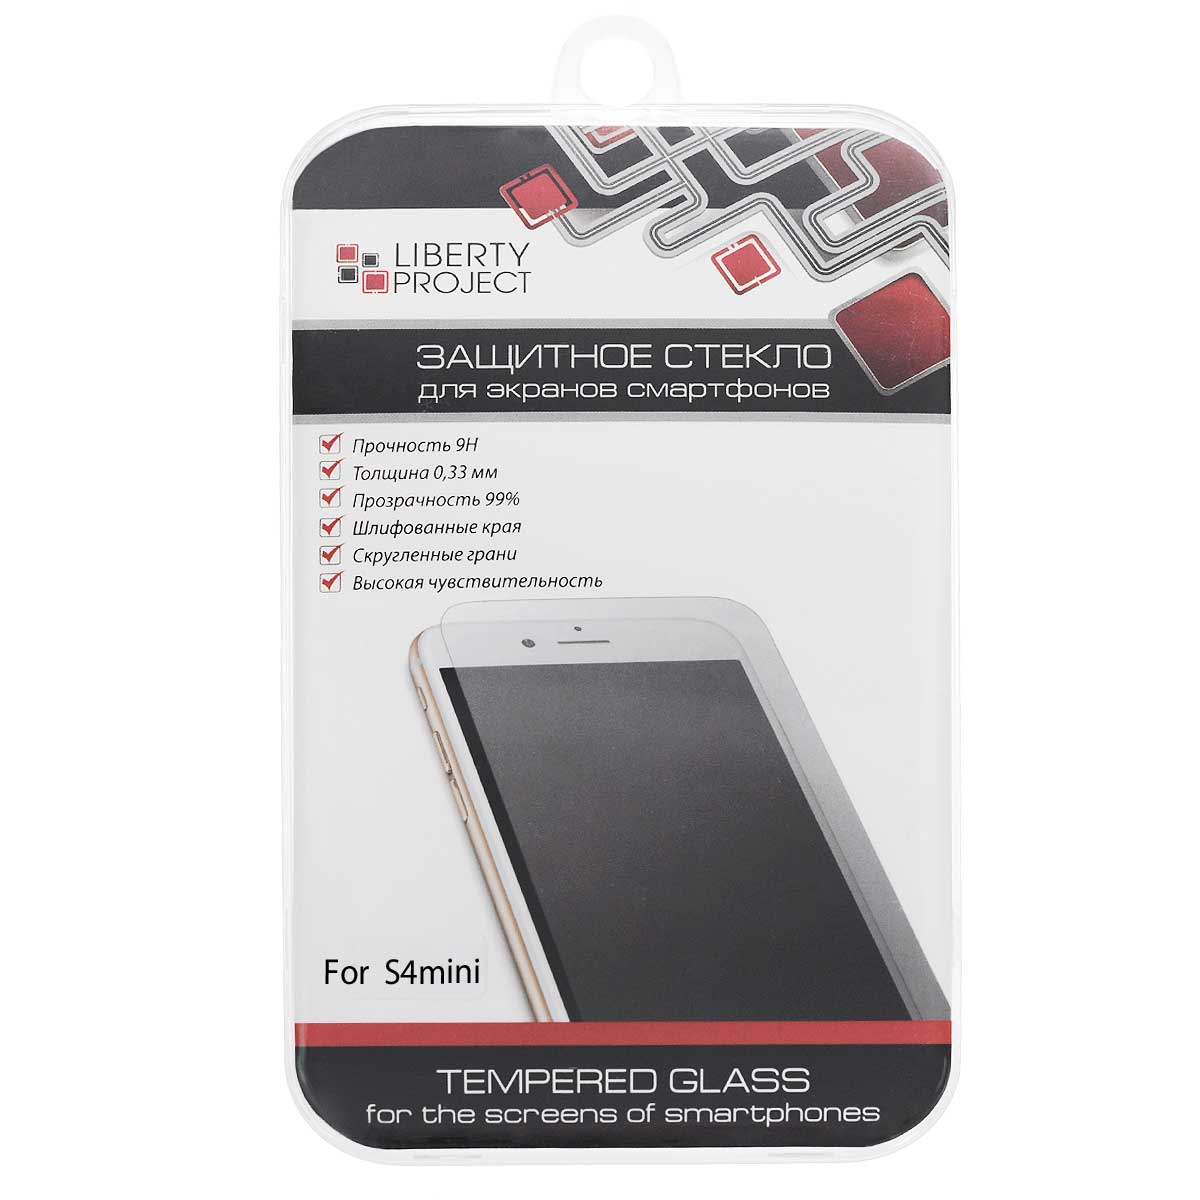 Liberty Project Tempered Glass защитное стекло для Samsung Galaxy S4 mini, Clear (0,33 мм)